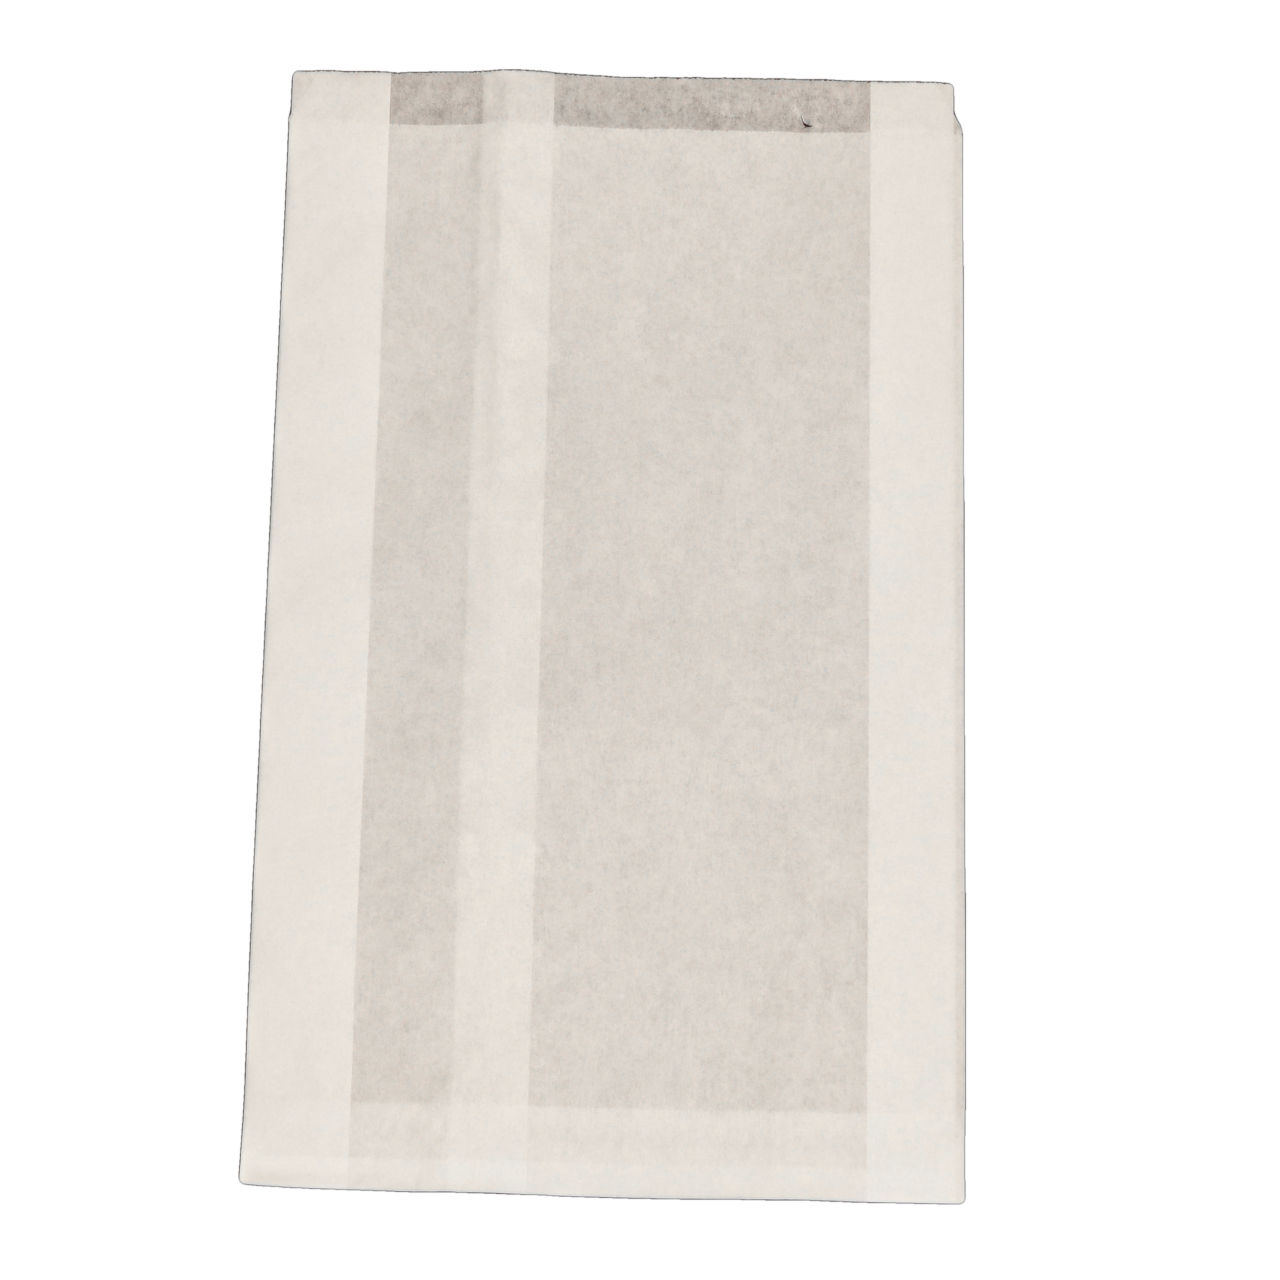 Faltenbeutel fettdicht, ca. 20 + 7 x 32 cm, weiß, aus Pergament Ersatzpapier